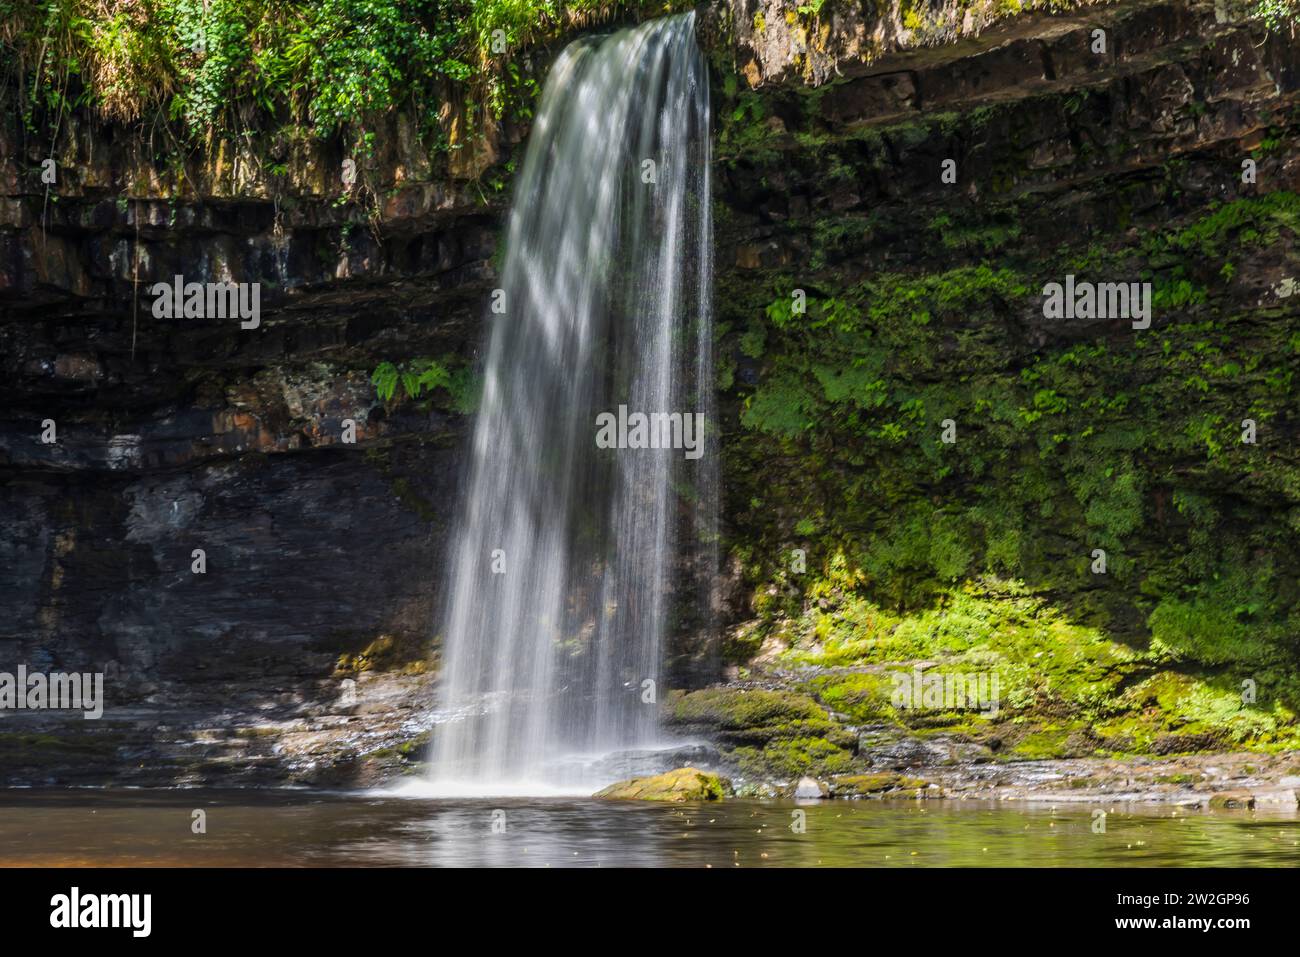 Landscape, Scwd Gladis, (Lady Falls), Waterfalls, Wales, UK. Stock Photo